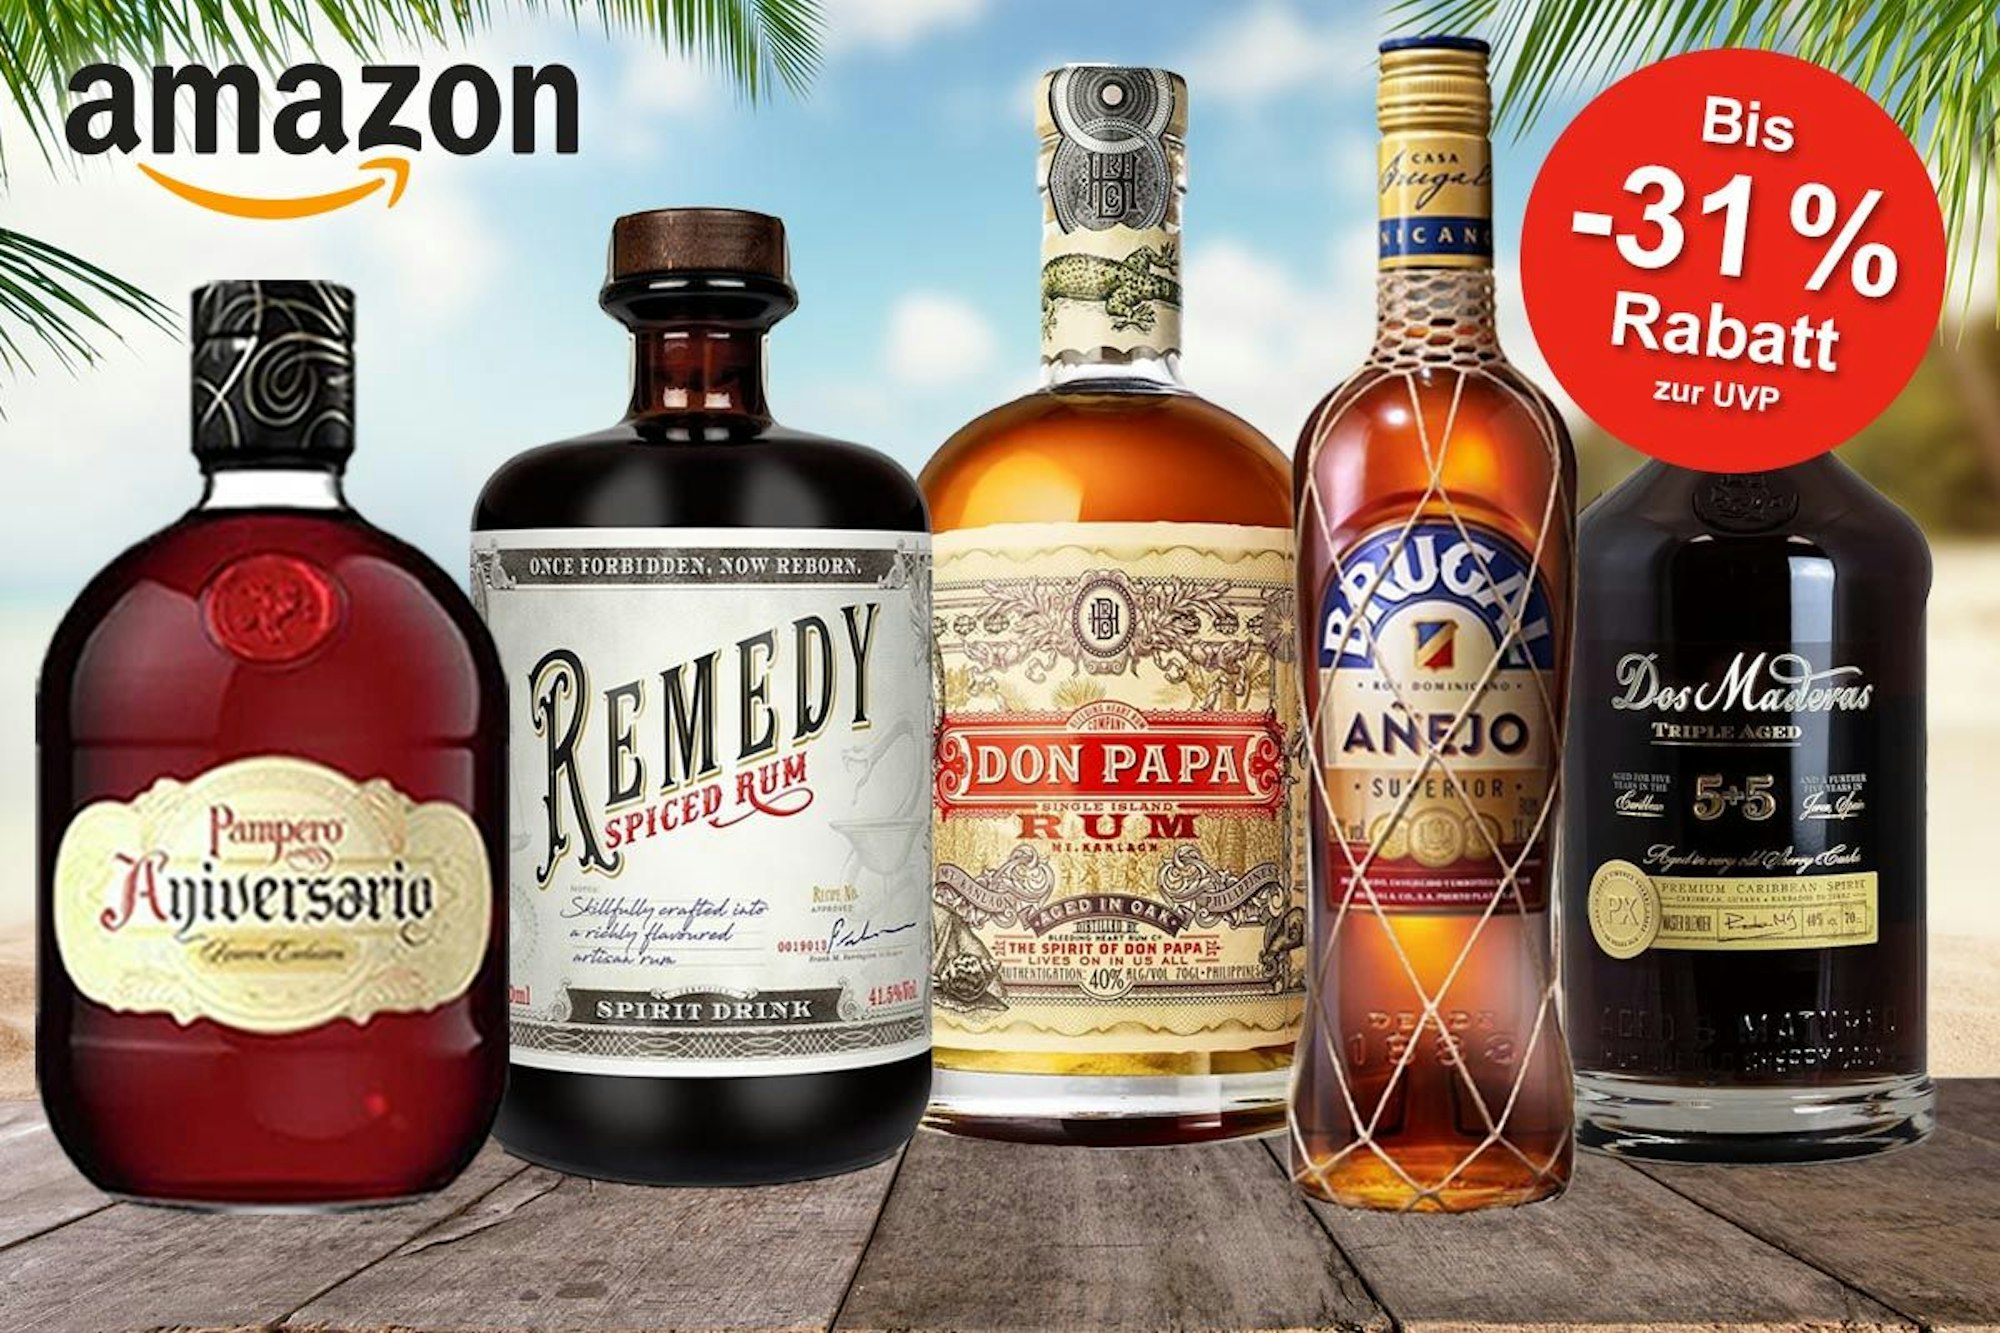 Rum Spirituosen Flaschen von Pampero, Remedy, Don Papa, Brugal und Dos Maderas vor einem Hintergrund mit Strand und Palmen.